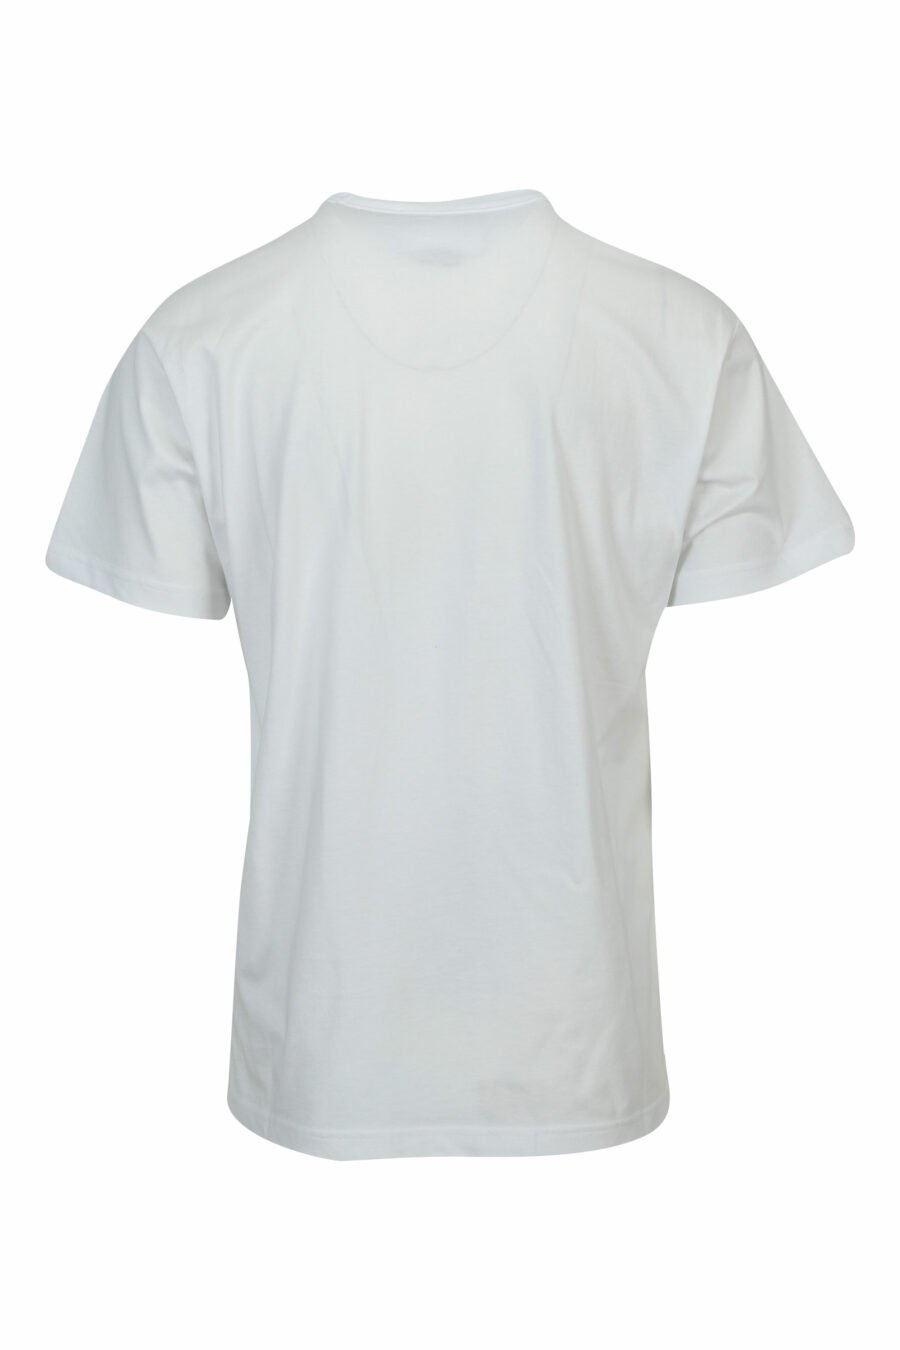 Camiseta blanca con maxilogo barroco rasgado - 8052019603101 1